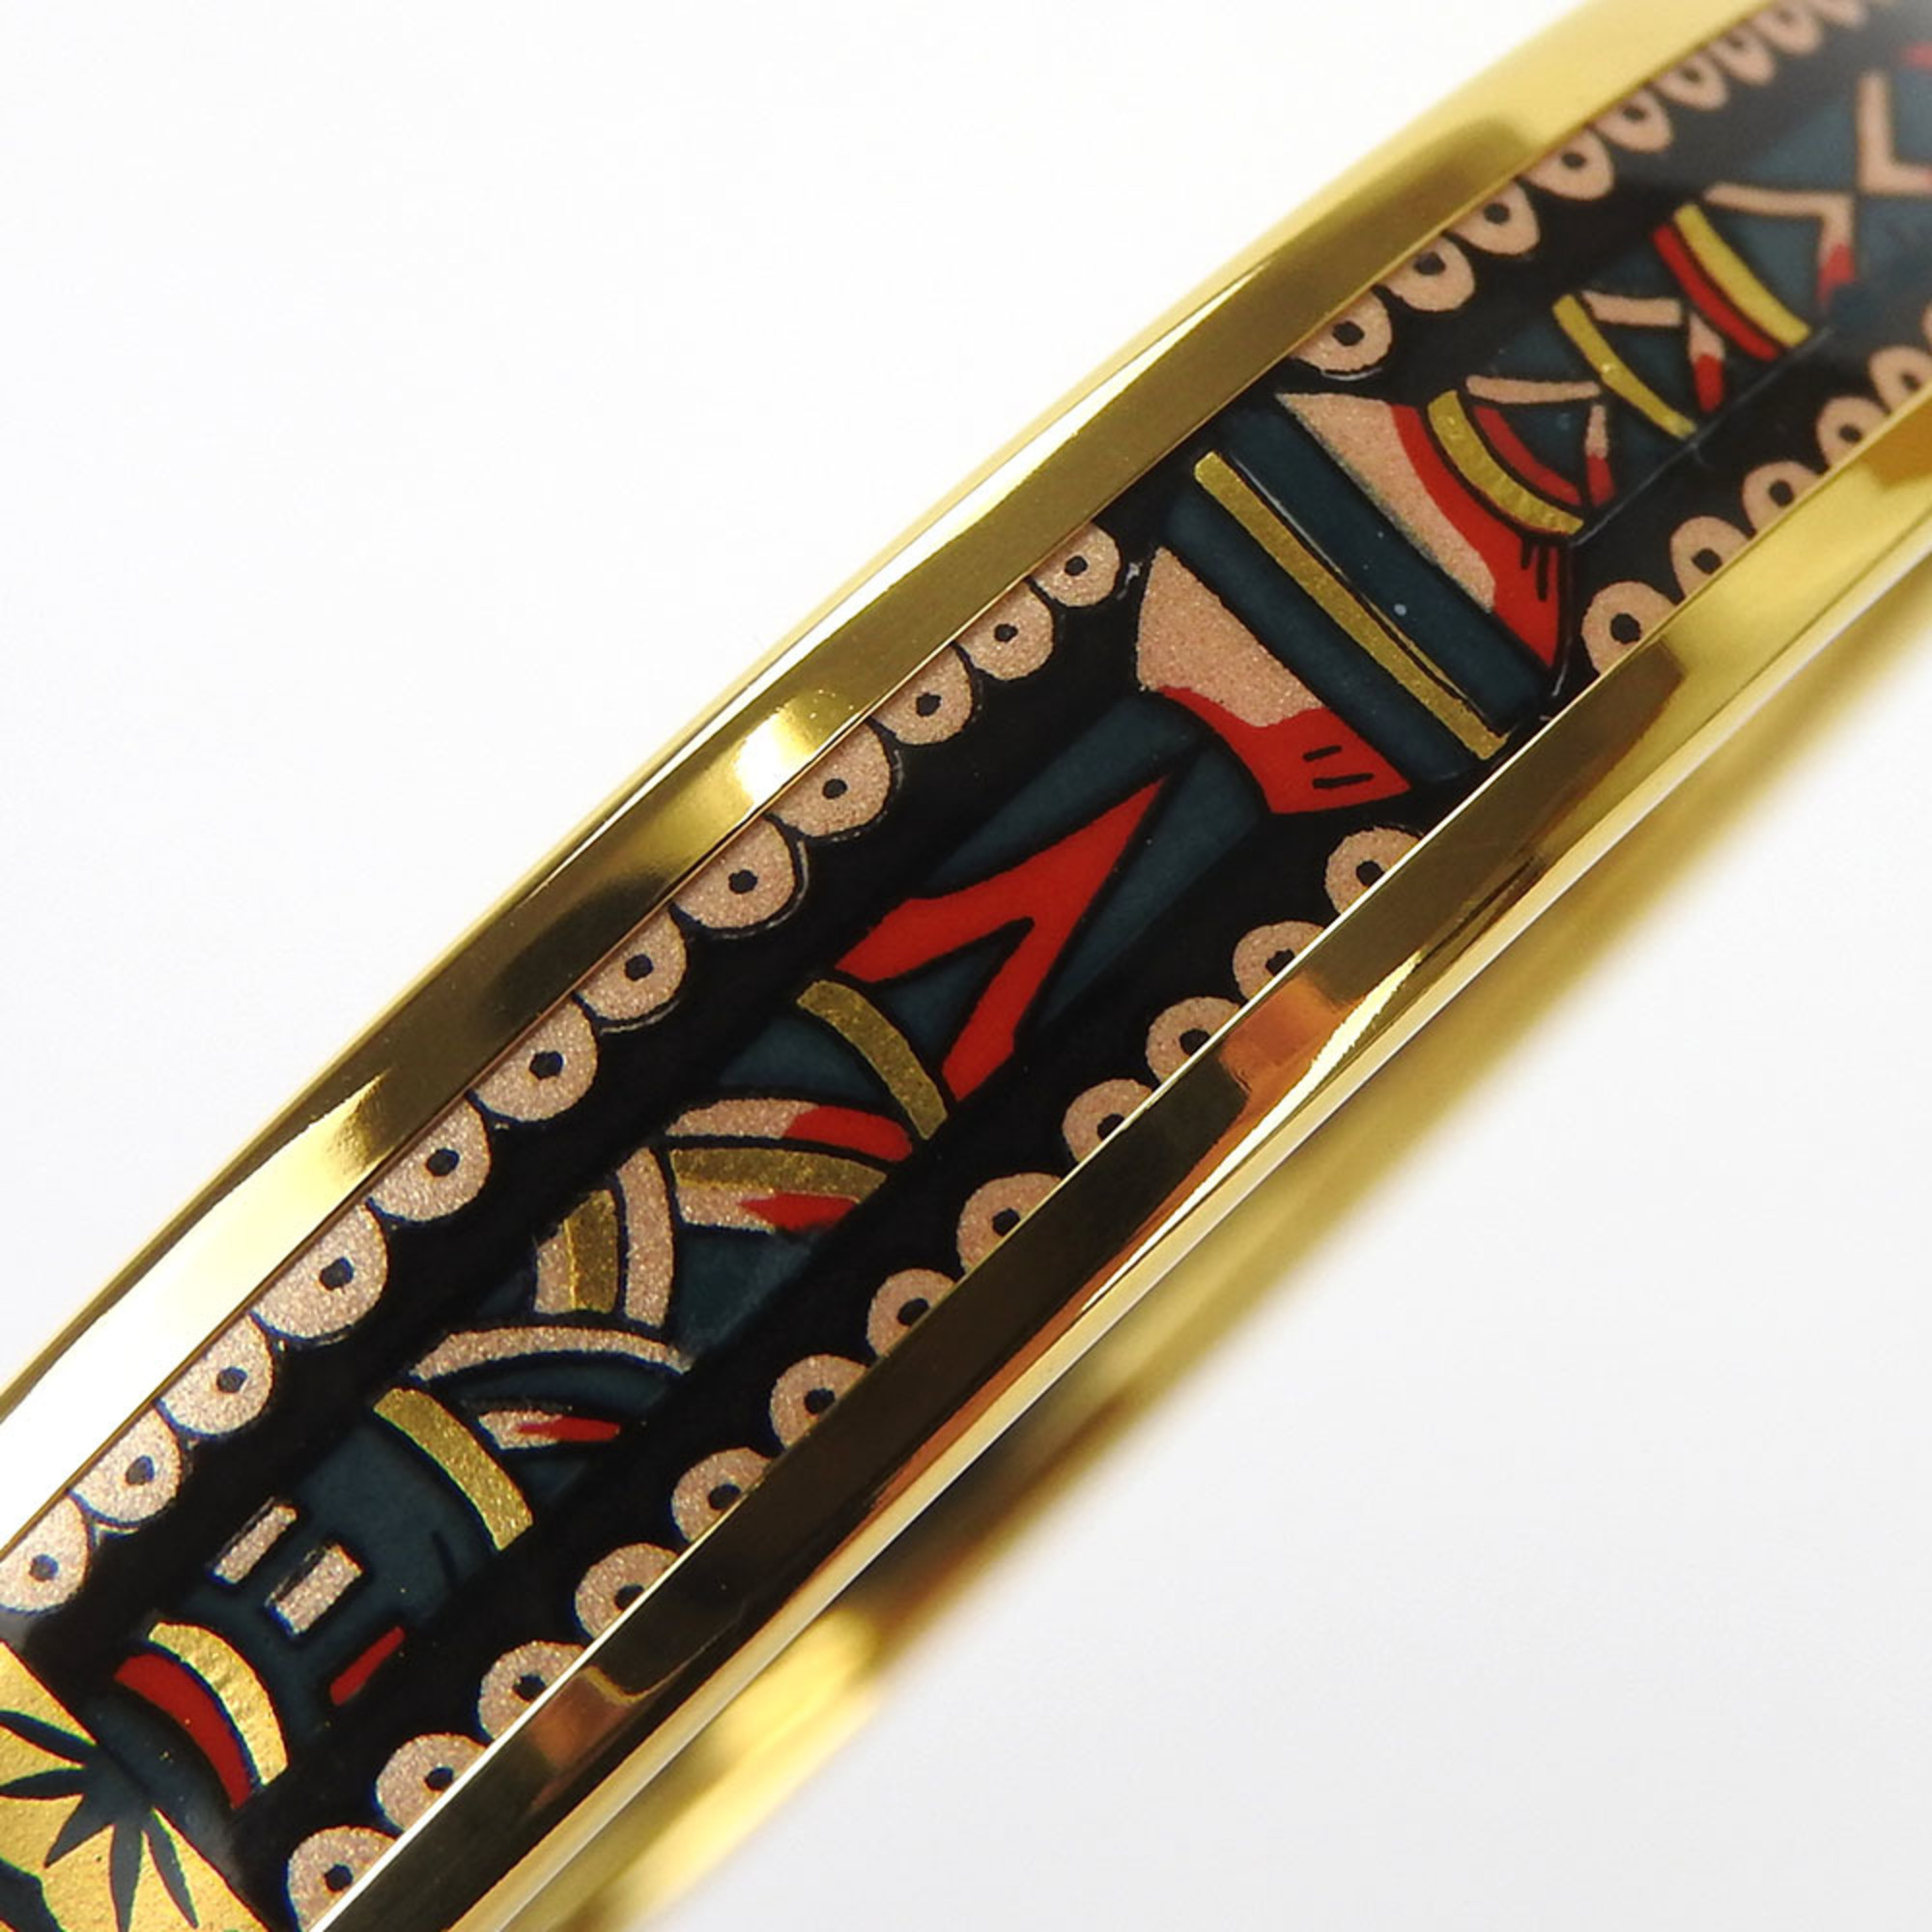 hermes enamel bangle bracelet accessory cloisonné gold black GP plated ladies accessories